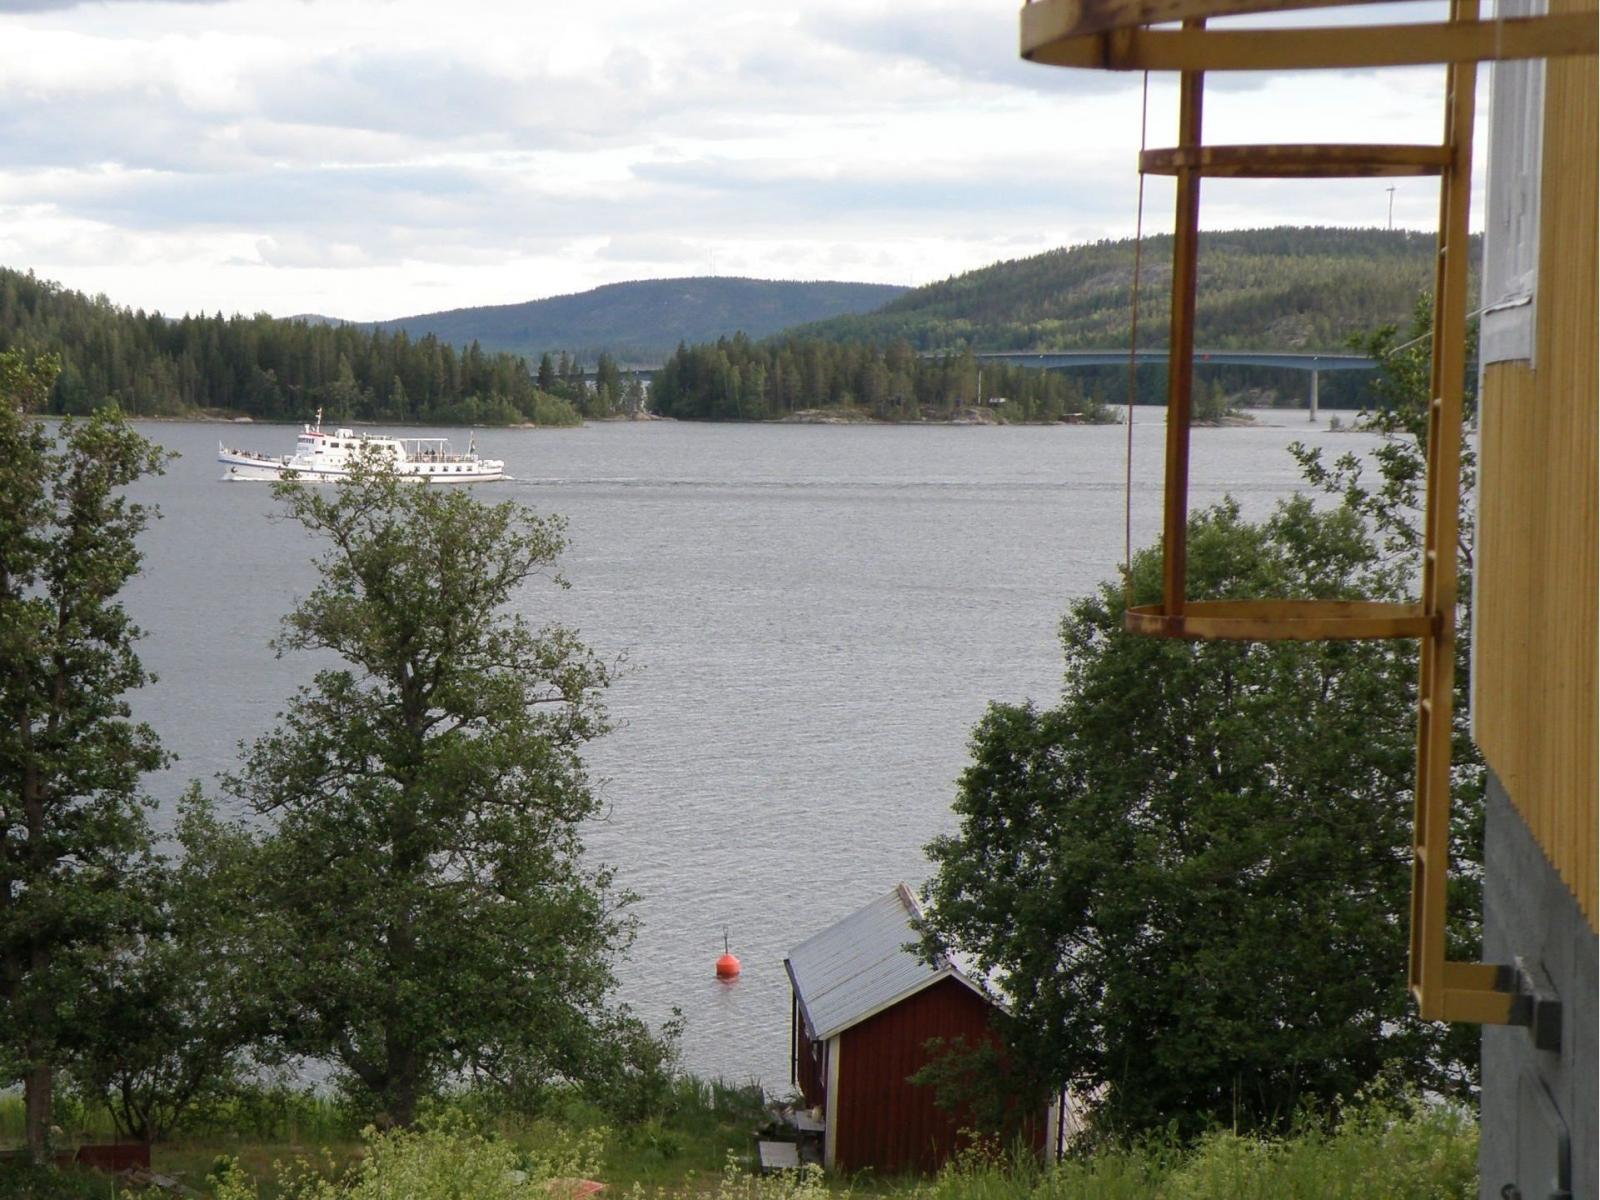 Till höger på bilden syns kortsidan av huvudbyggnaden. Vid vattnet ligger sjöboden där det också finns logi. På fjärden passerar Ådalen III